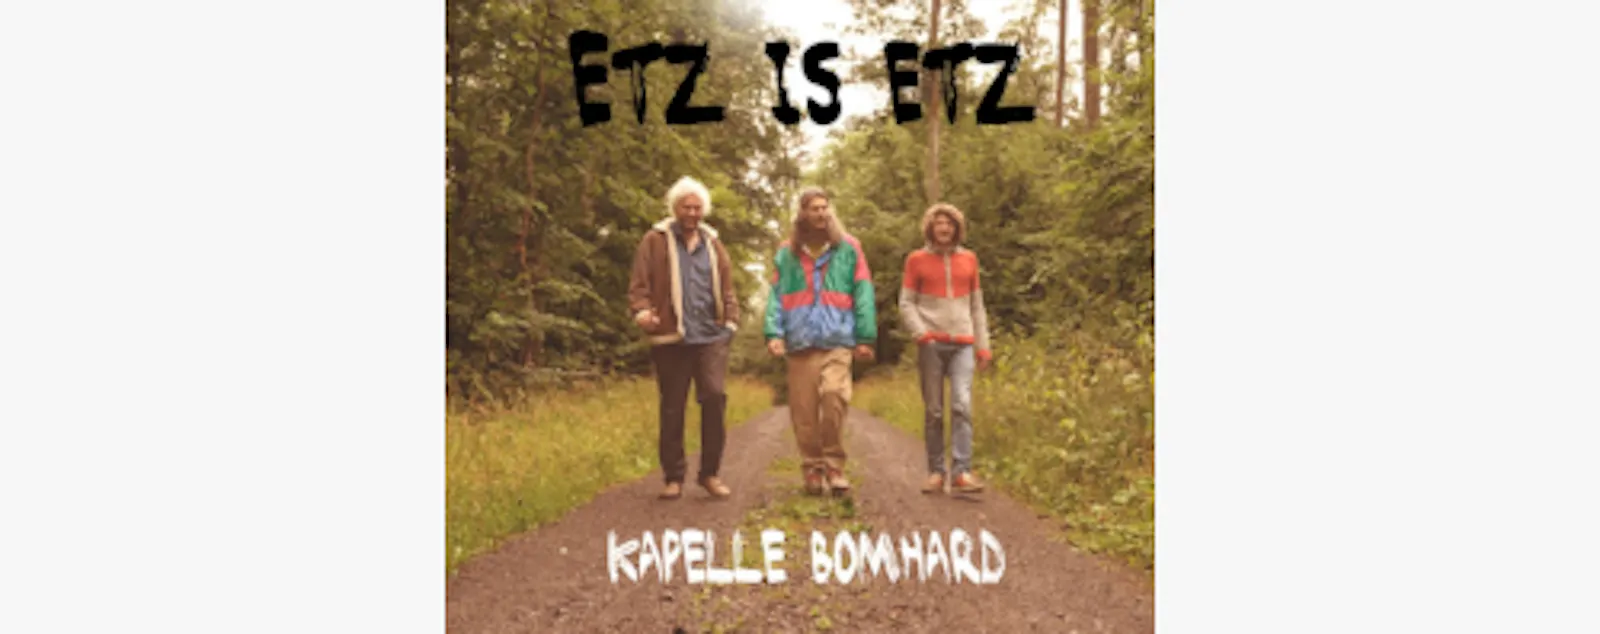 CD-Cover Kapelle Bomhard: Etz is etz